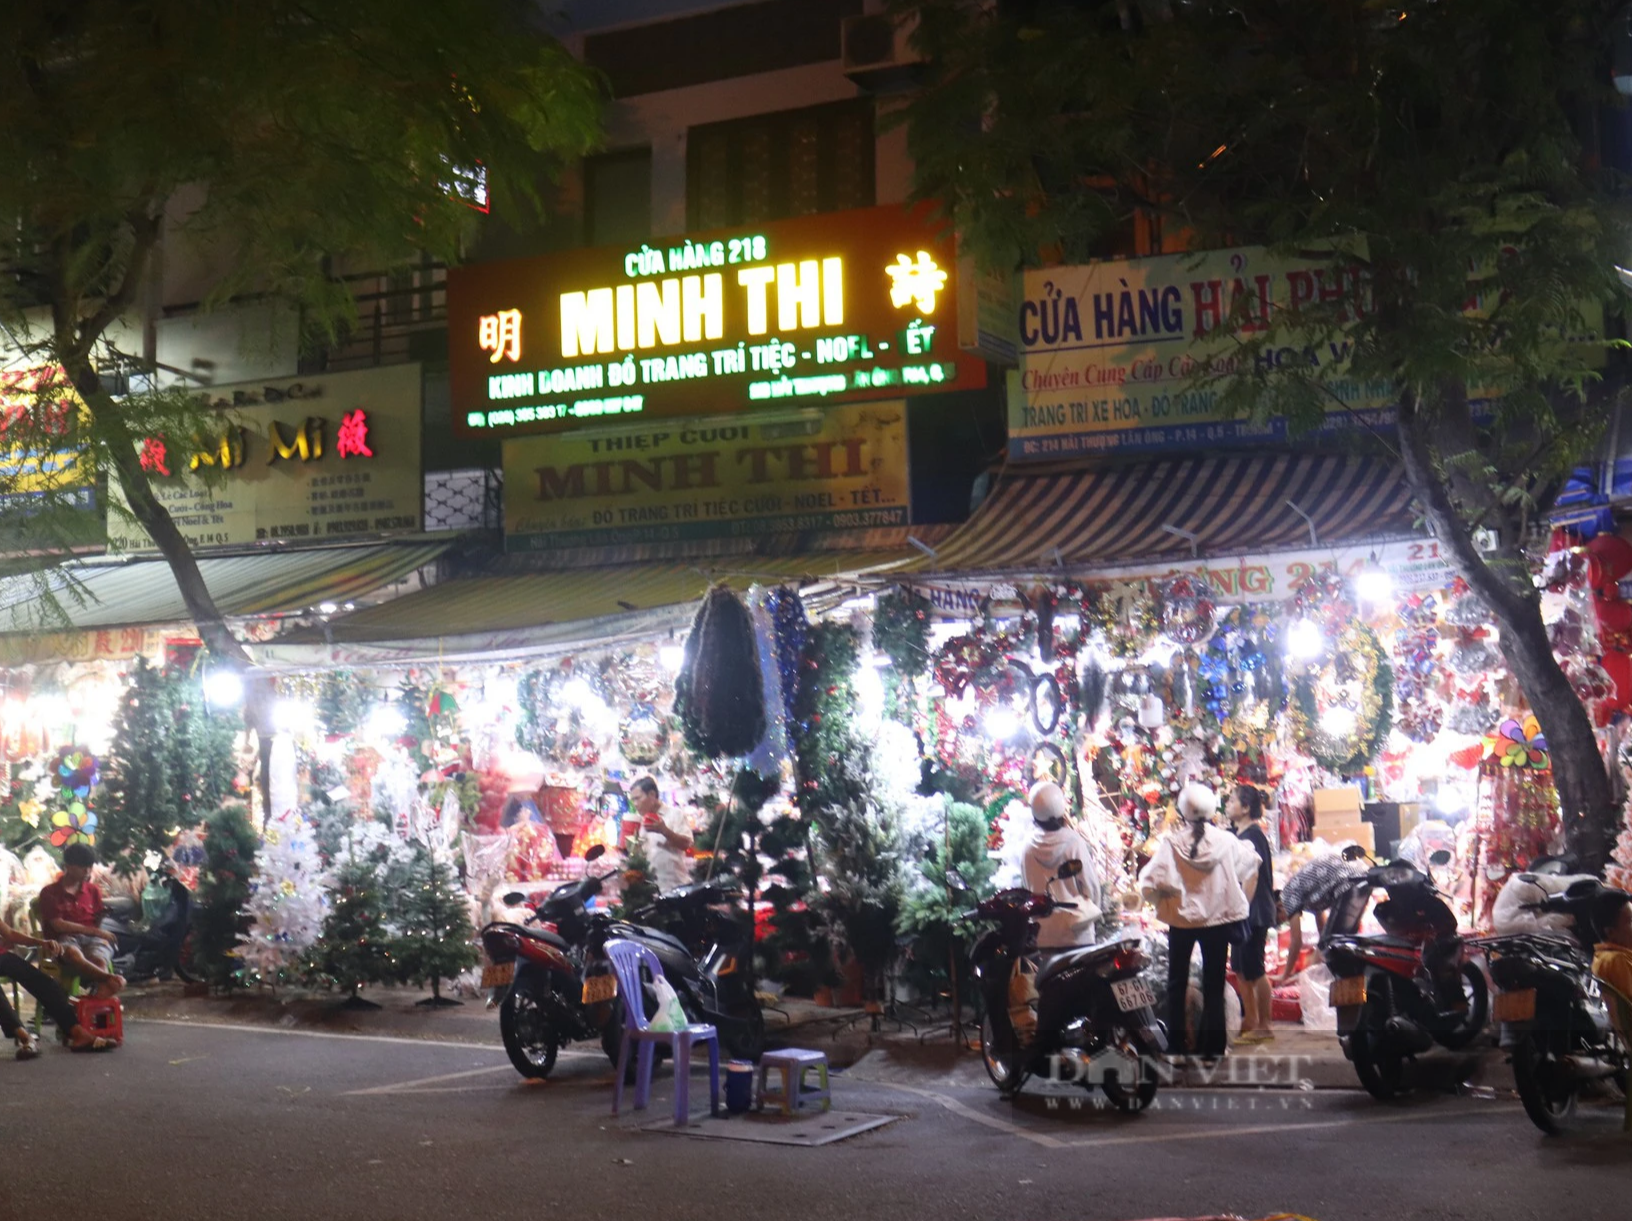 Con đường Giáng sinh lớn nhất Sài Gòn đã “lên đồ”, khách tấp nập mua thông về chơi Noel sớm - Ảnh 1.